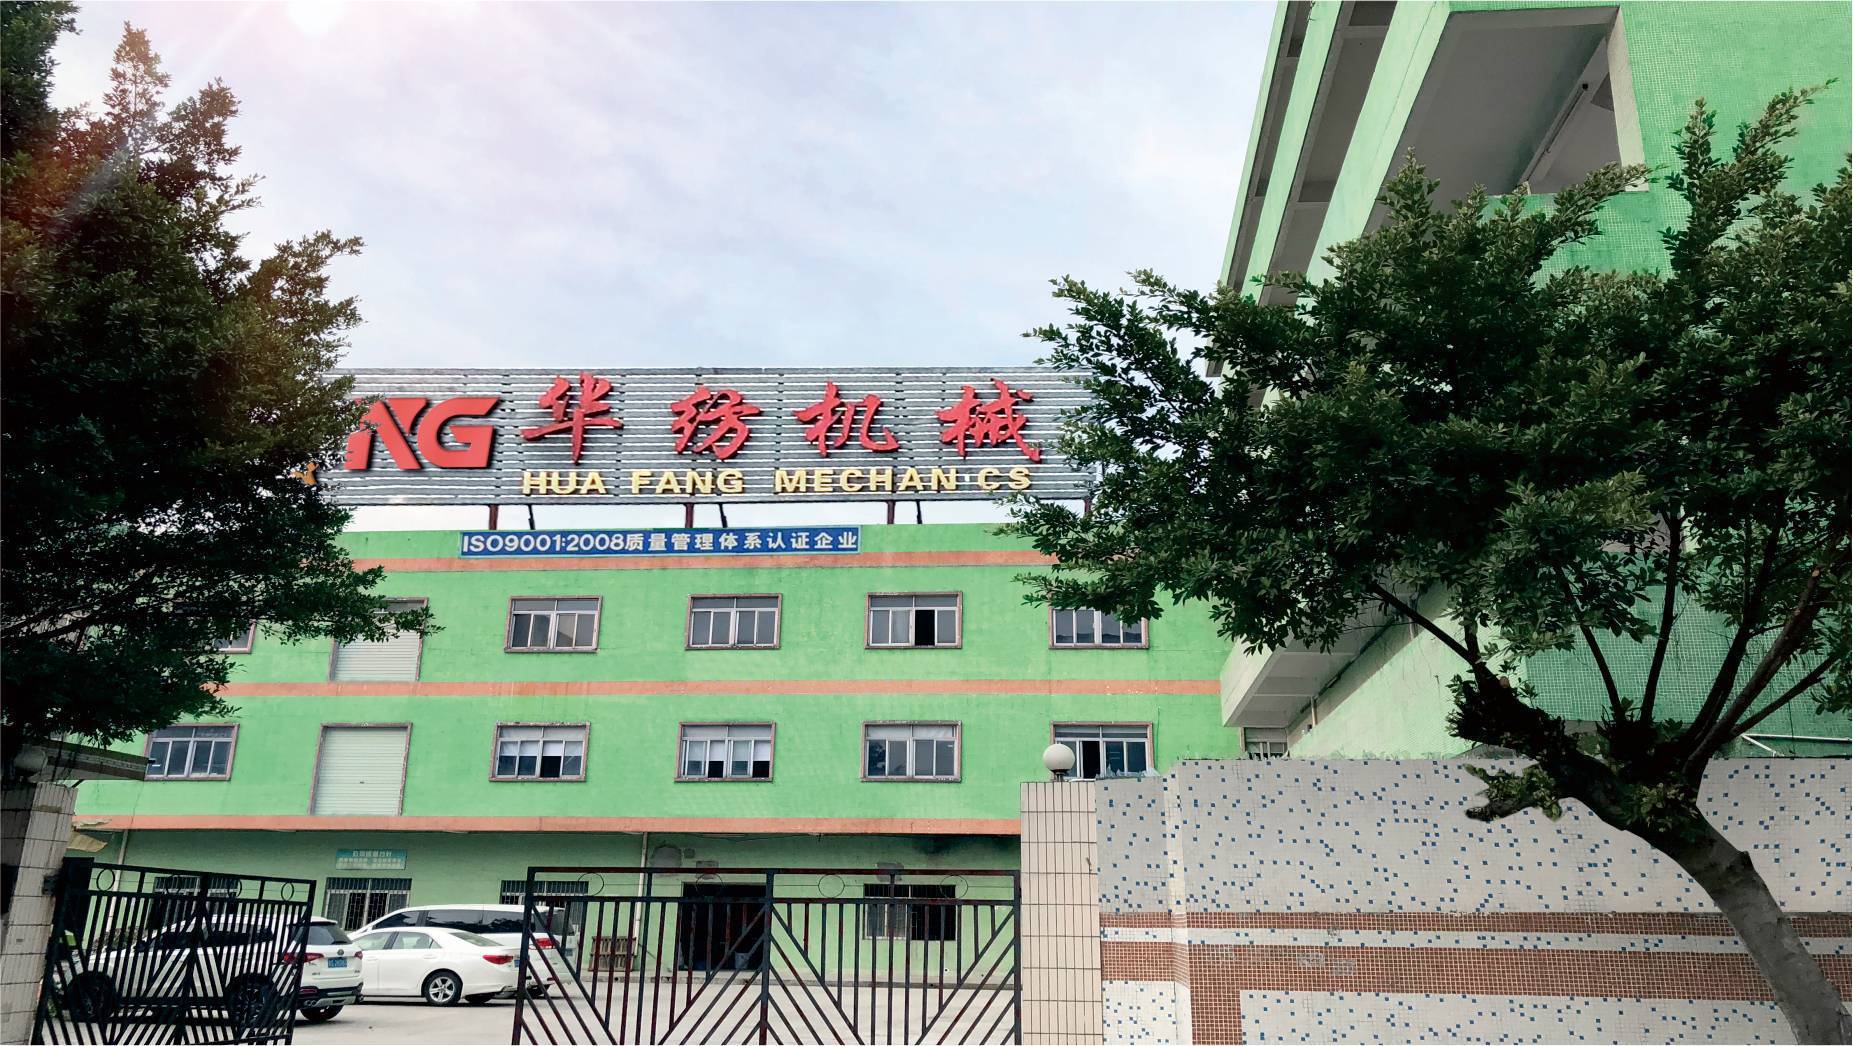     Dongguan Huafang Machinery Co., Ltd